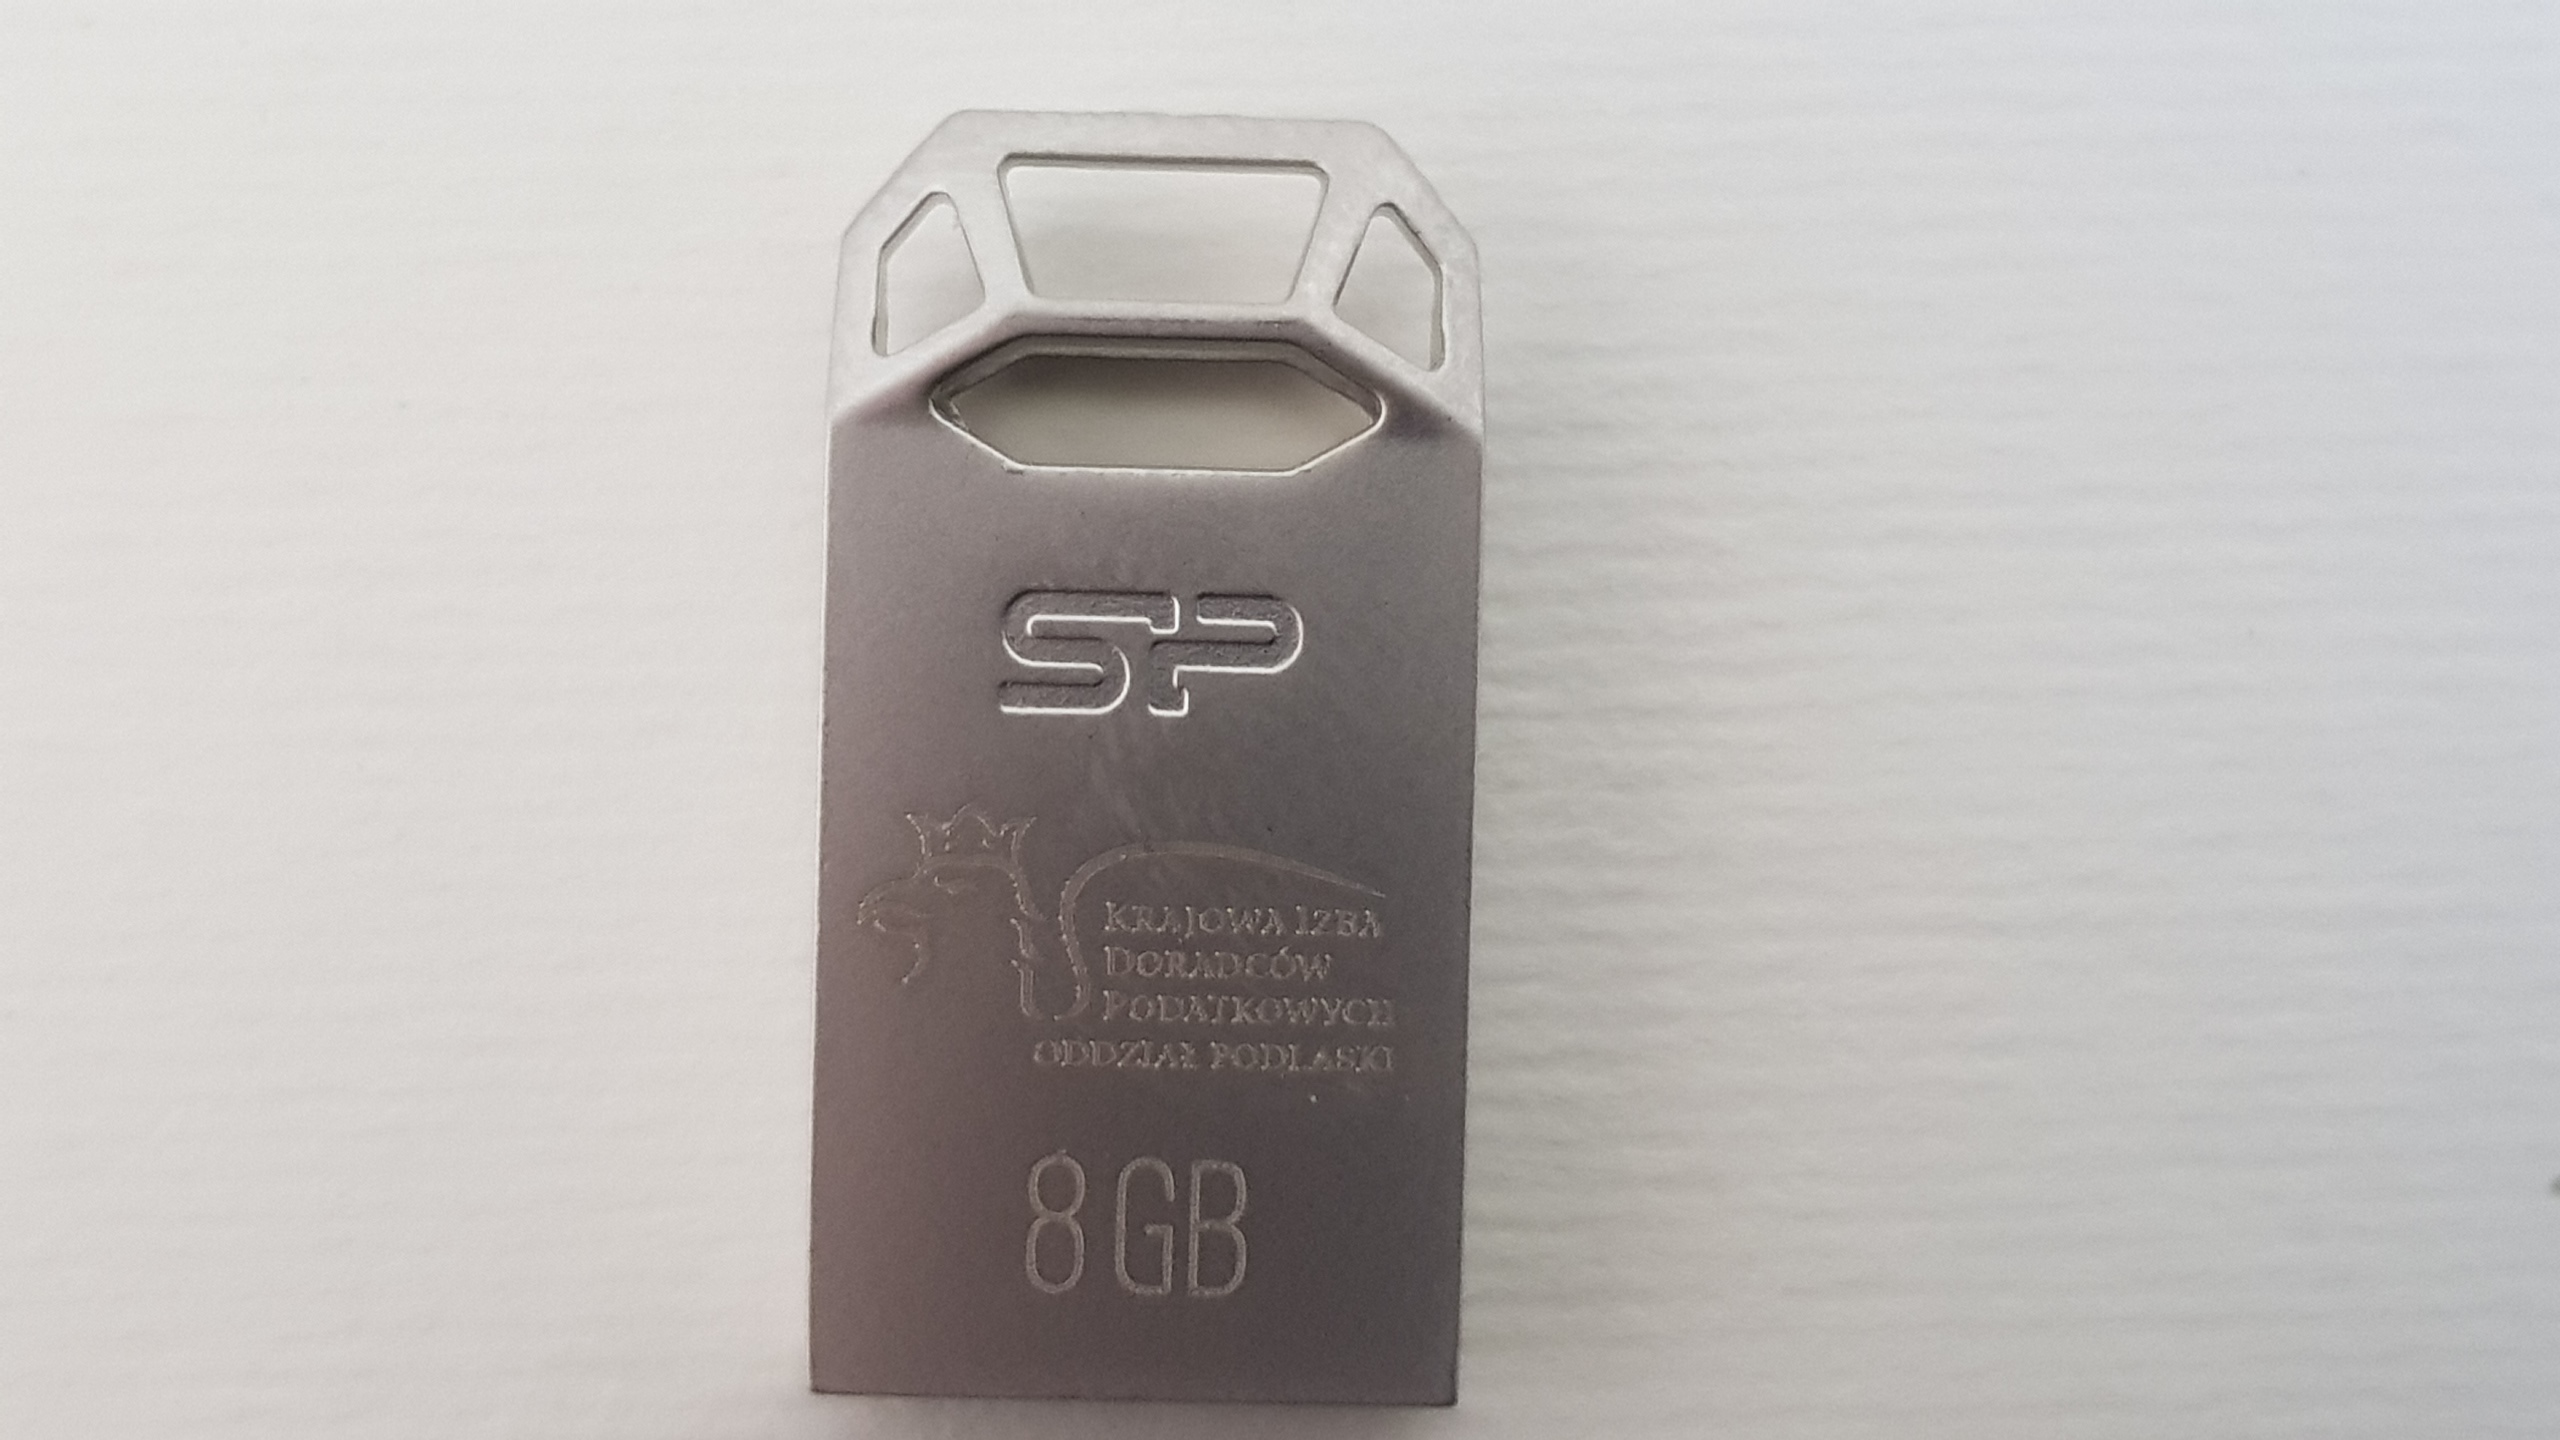 USB Doradcy Podatkowi